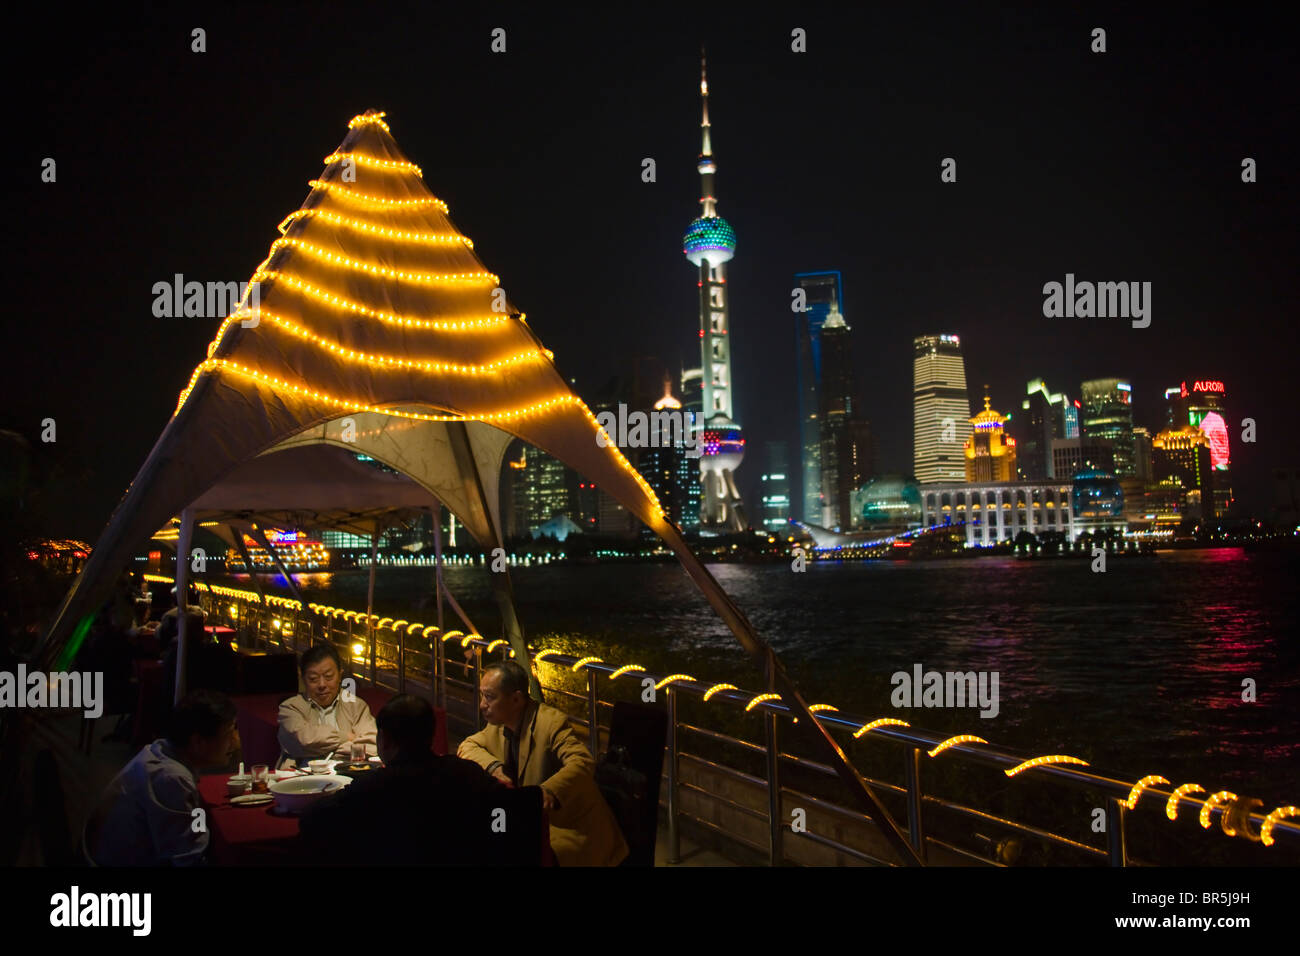 Vista nocturna de Pudong dominado por la torre de televisión Oriental Pearl a lo largo del río Huangpu, Shanghai, China Foto de stock